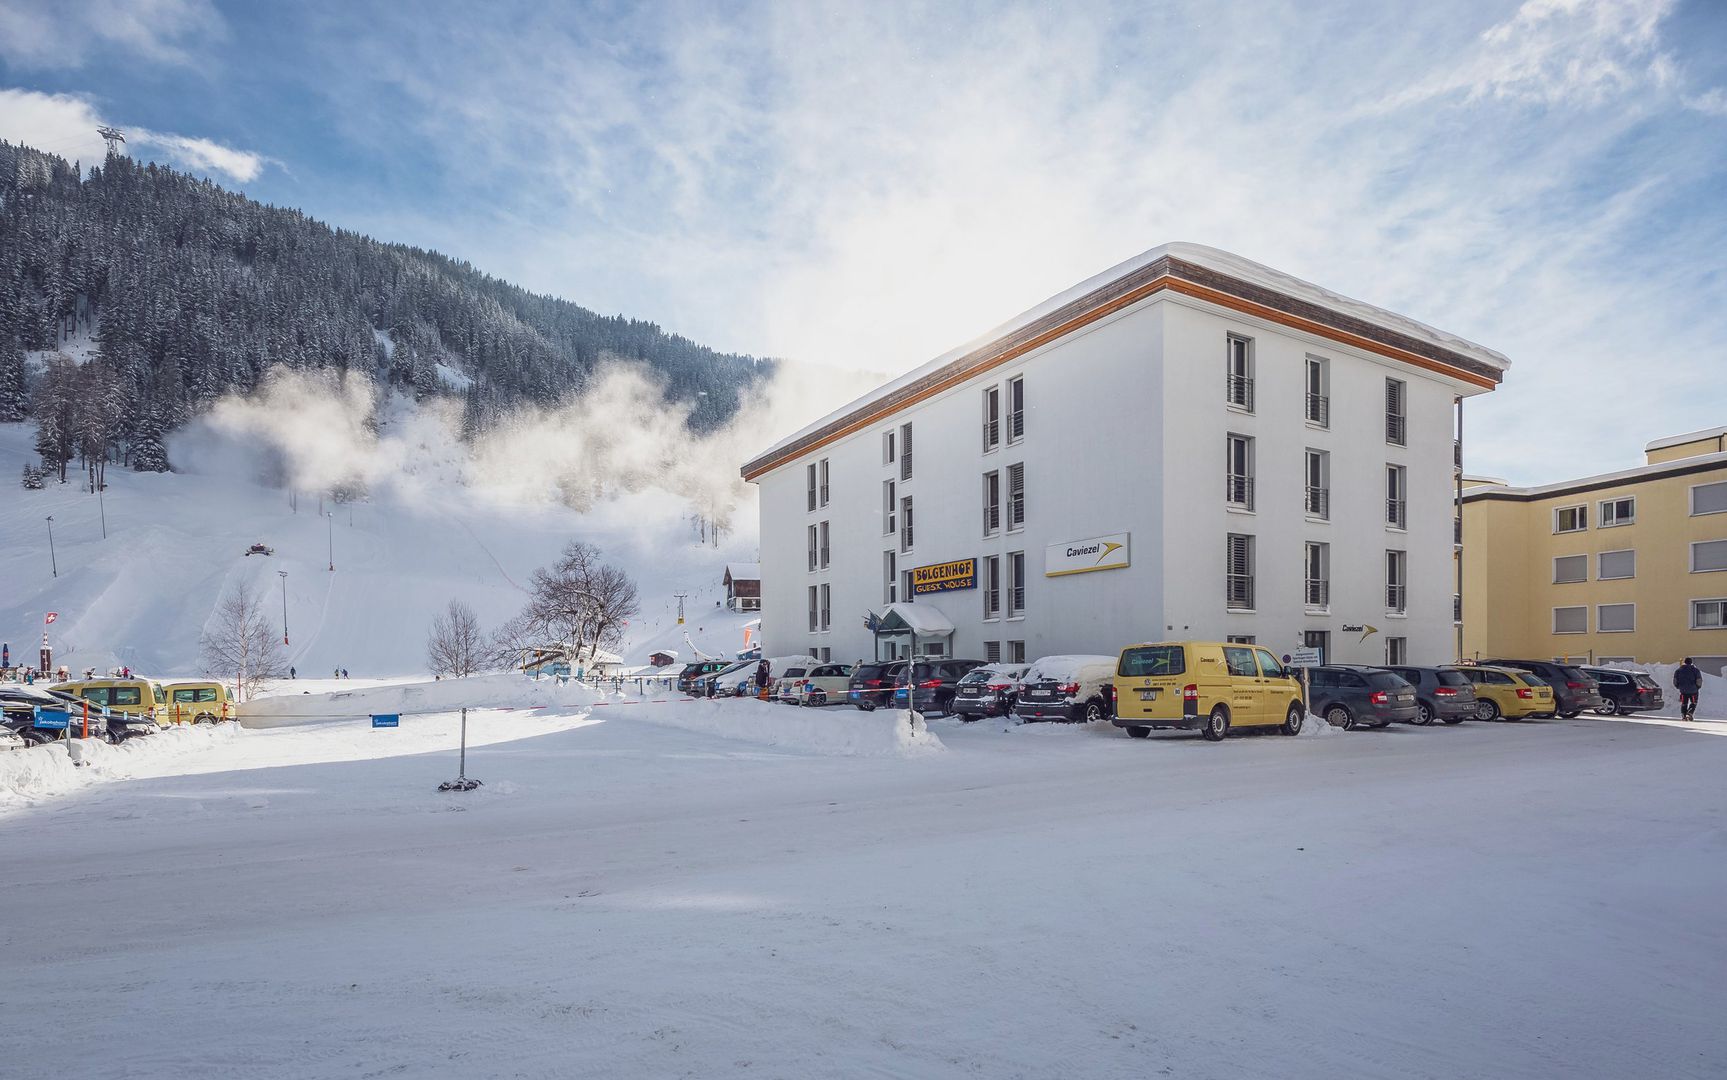 Guesthouse Bolgenhof in Davos, Guesthouse Bolgenhof / Schweiz